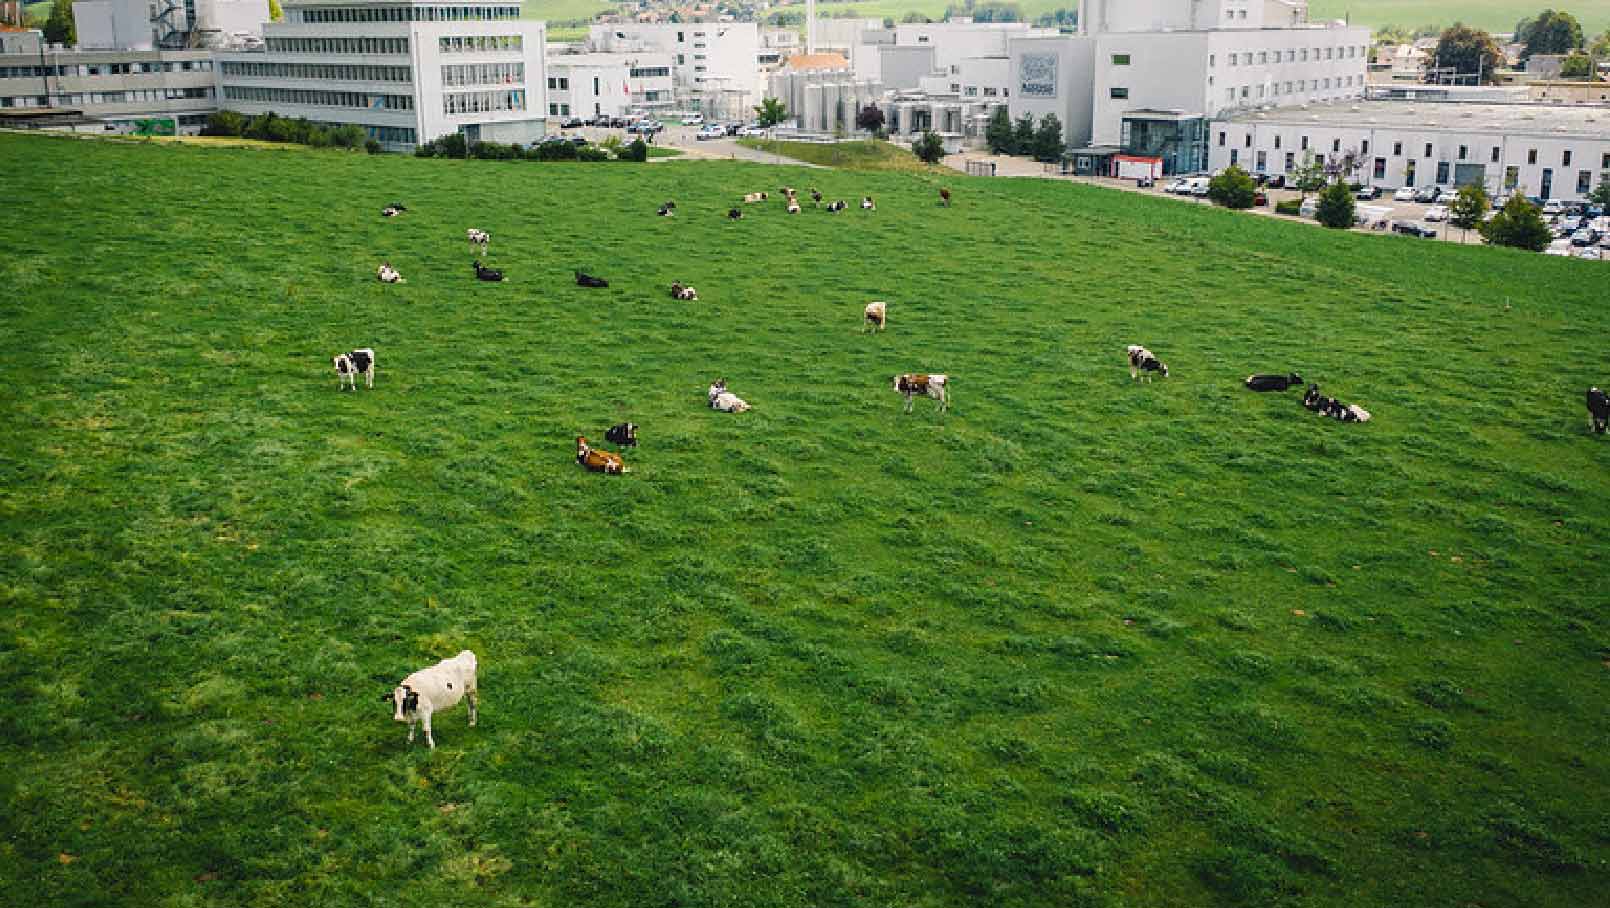 Kühe grasen